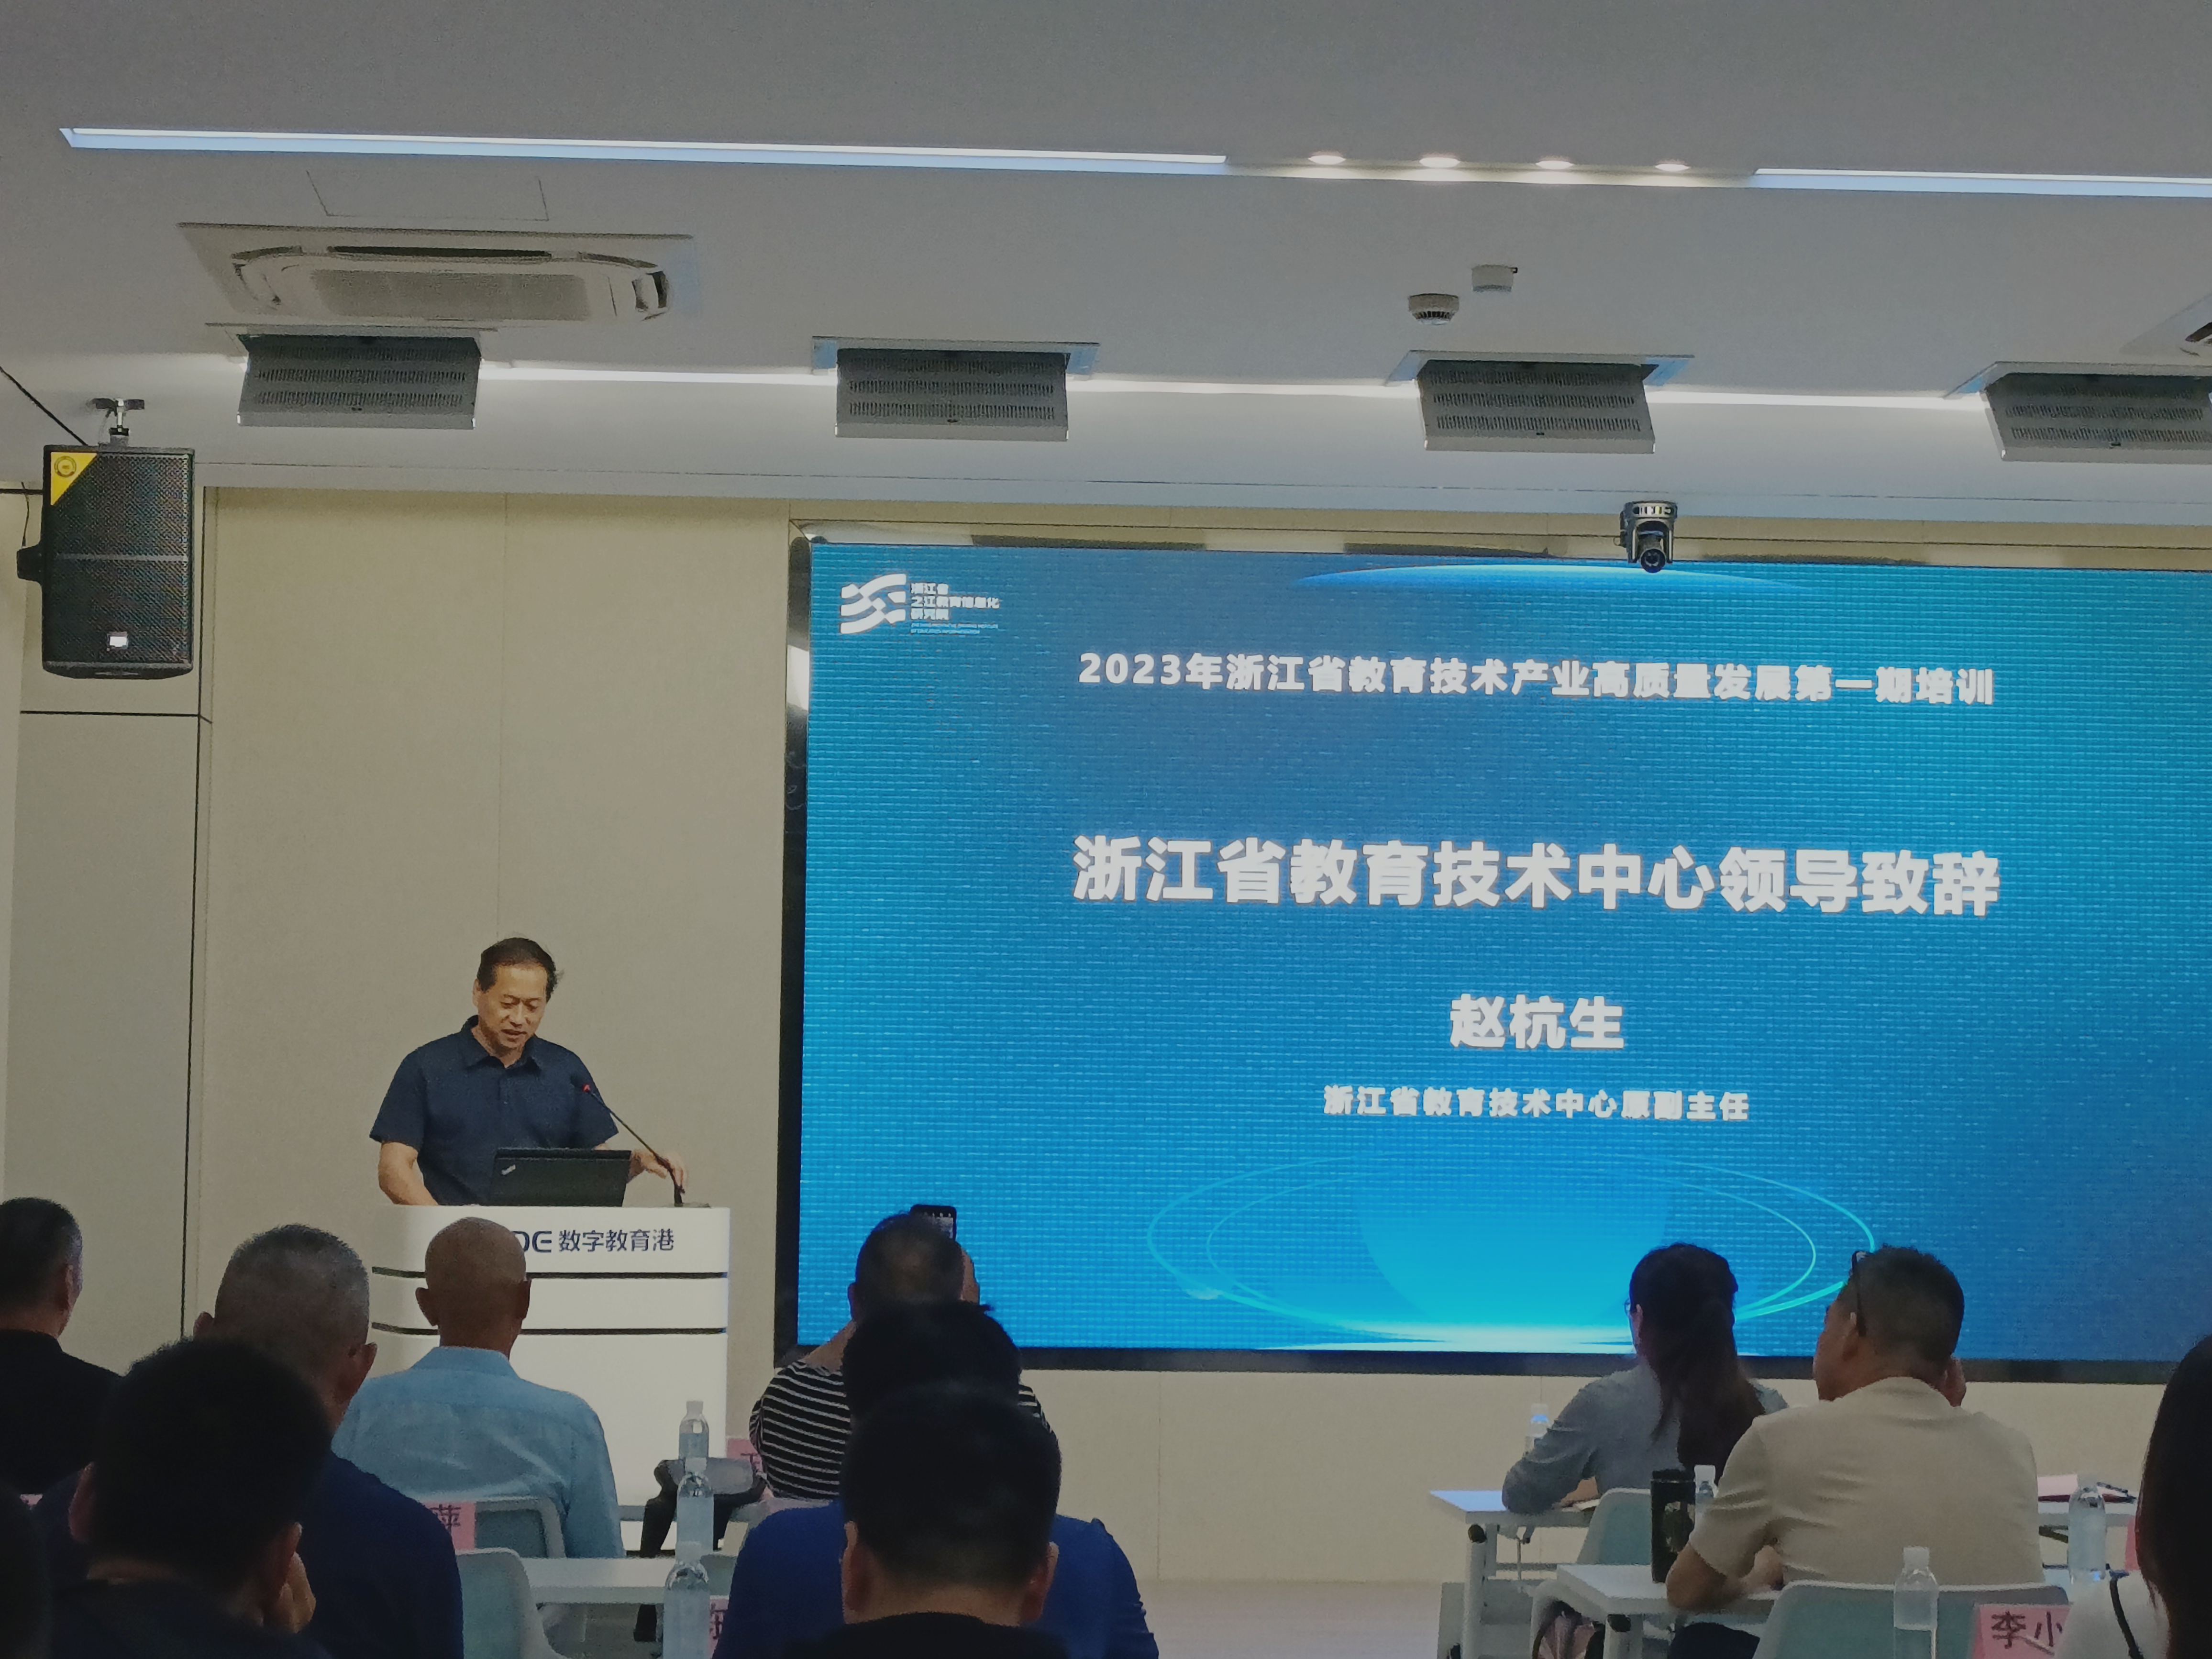 2023年浙江省教育技术产业高质量发展第一期培训活动在数字教育港成功举办